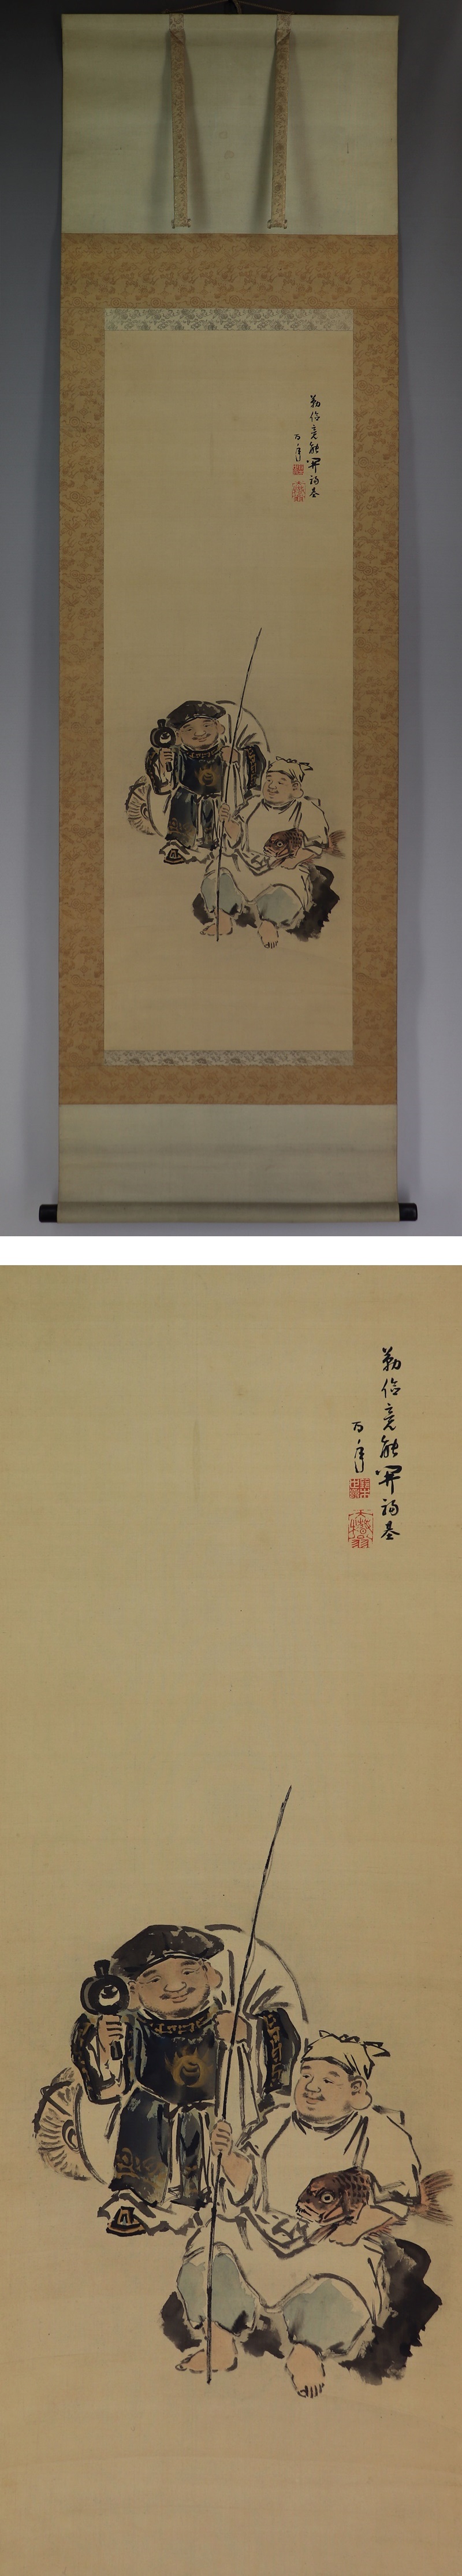 最安値通販鈴木百年◆絹本◆共箱◆二重箱◆掛軸 w08109 人物、菩薩